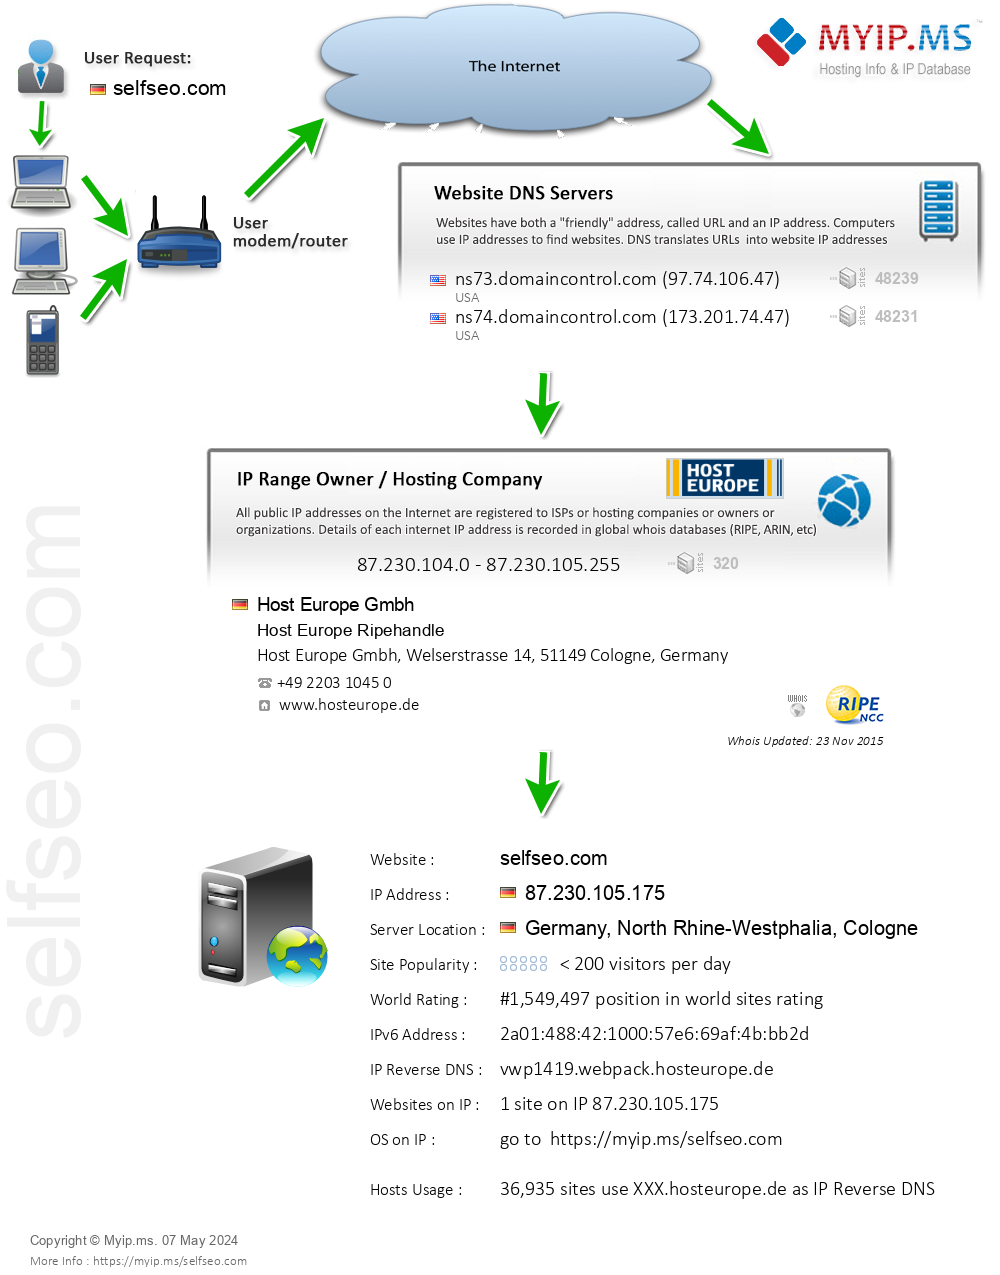 Selfseo.com - Website Hosting Visual IP Diagram